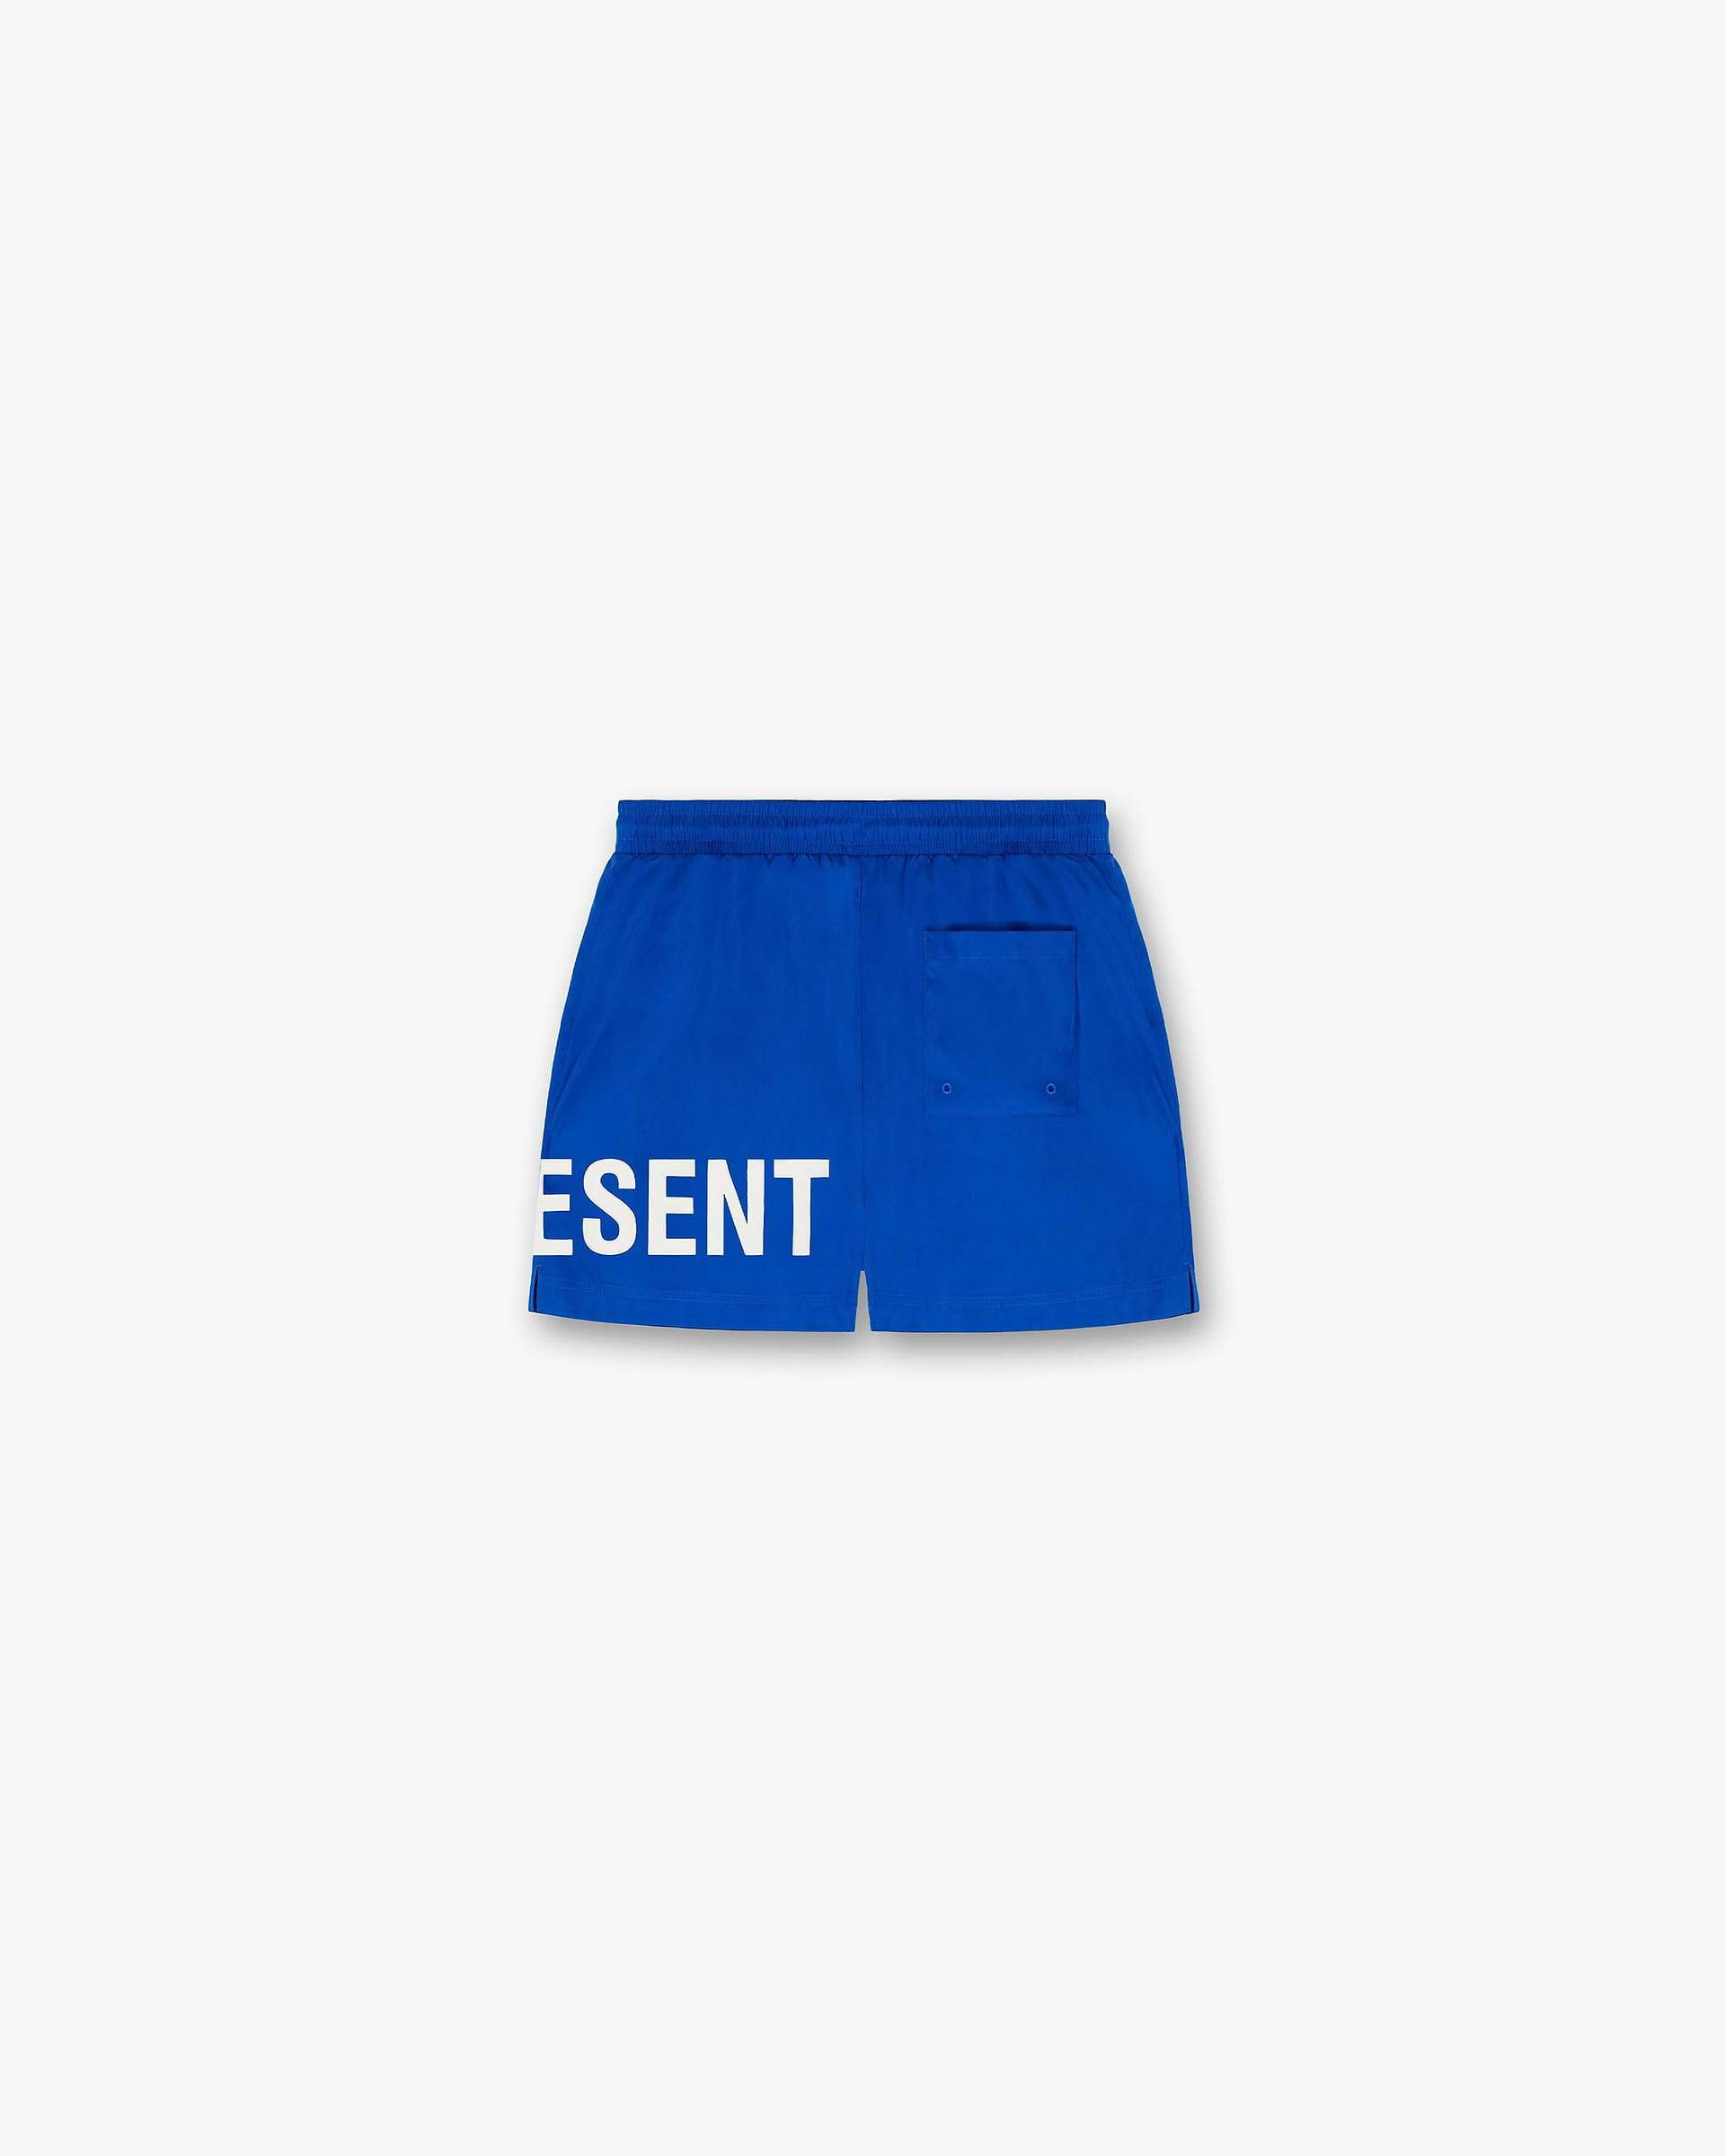 Swim Shorts | Cobalt Shorts SC23 | Represent Clo